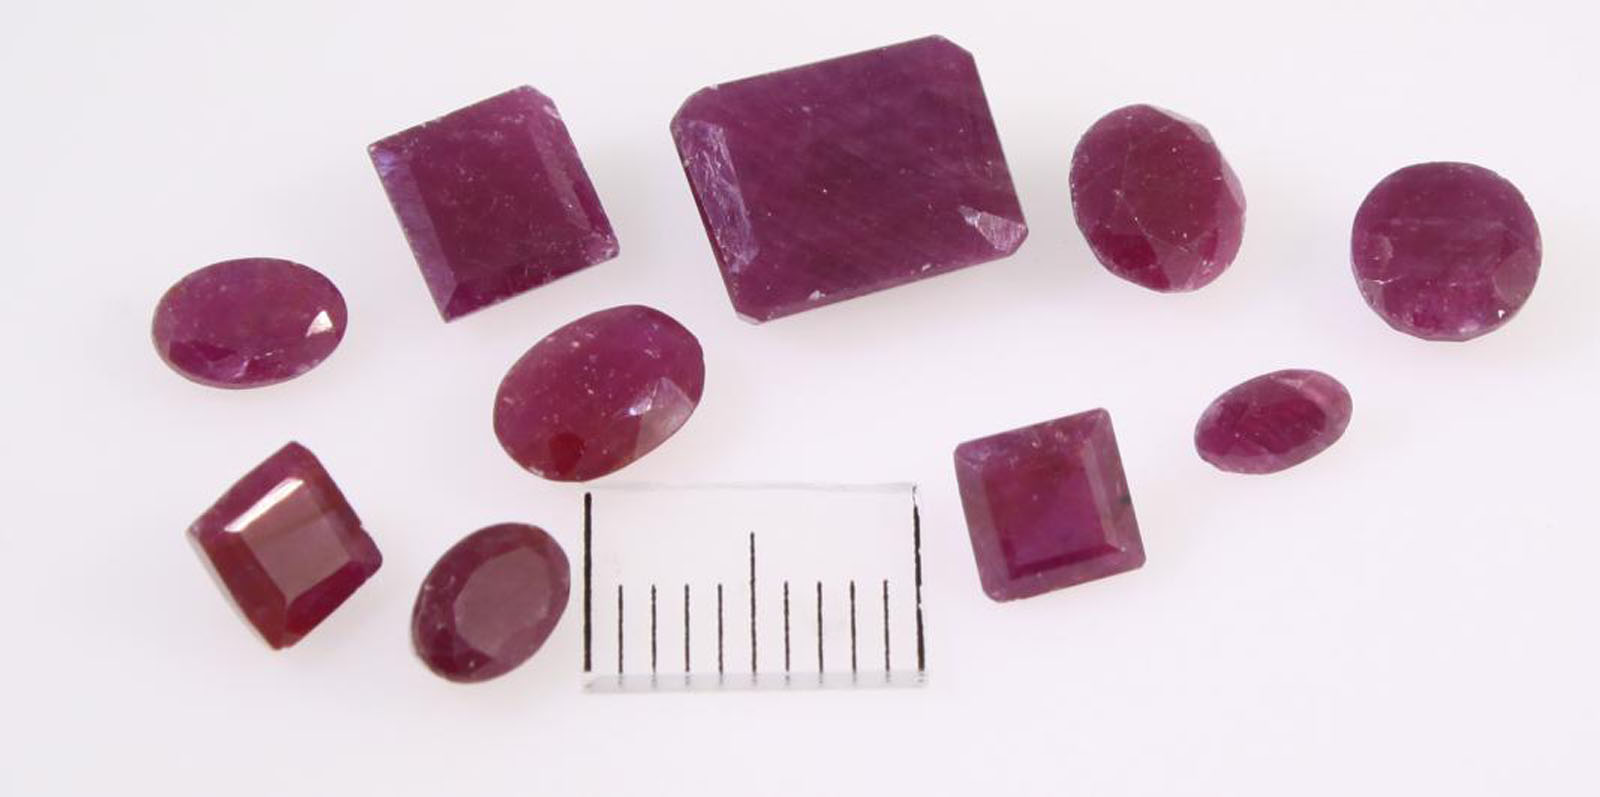 Ruby precious stone - Jewelry stones